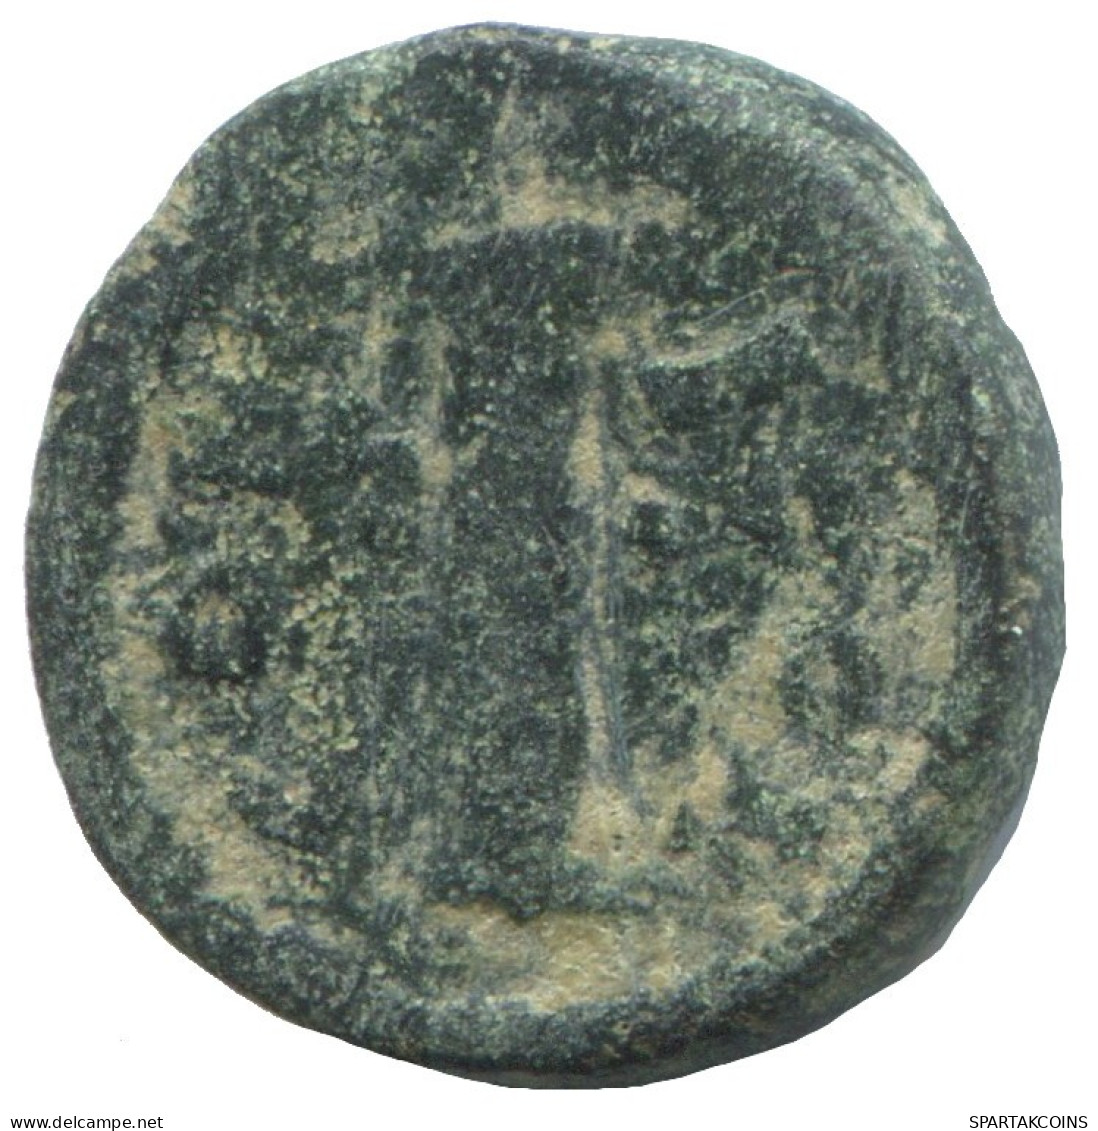 DECANUMMI AUTHENTIC ORIGINAL ANCIENT BYZANTINE Coin 2.9g/16mm #AA550.19.U.A - Byzantinische Münzen